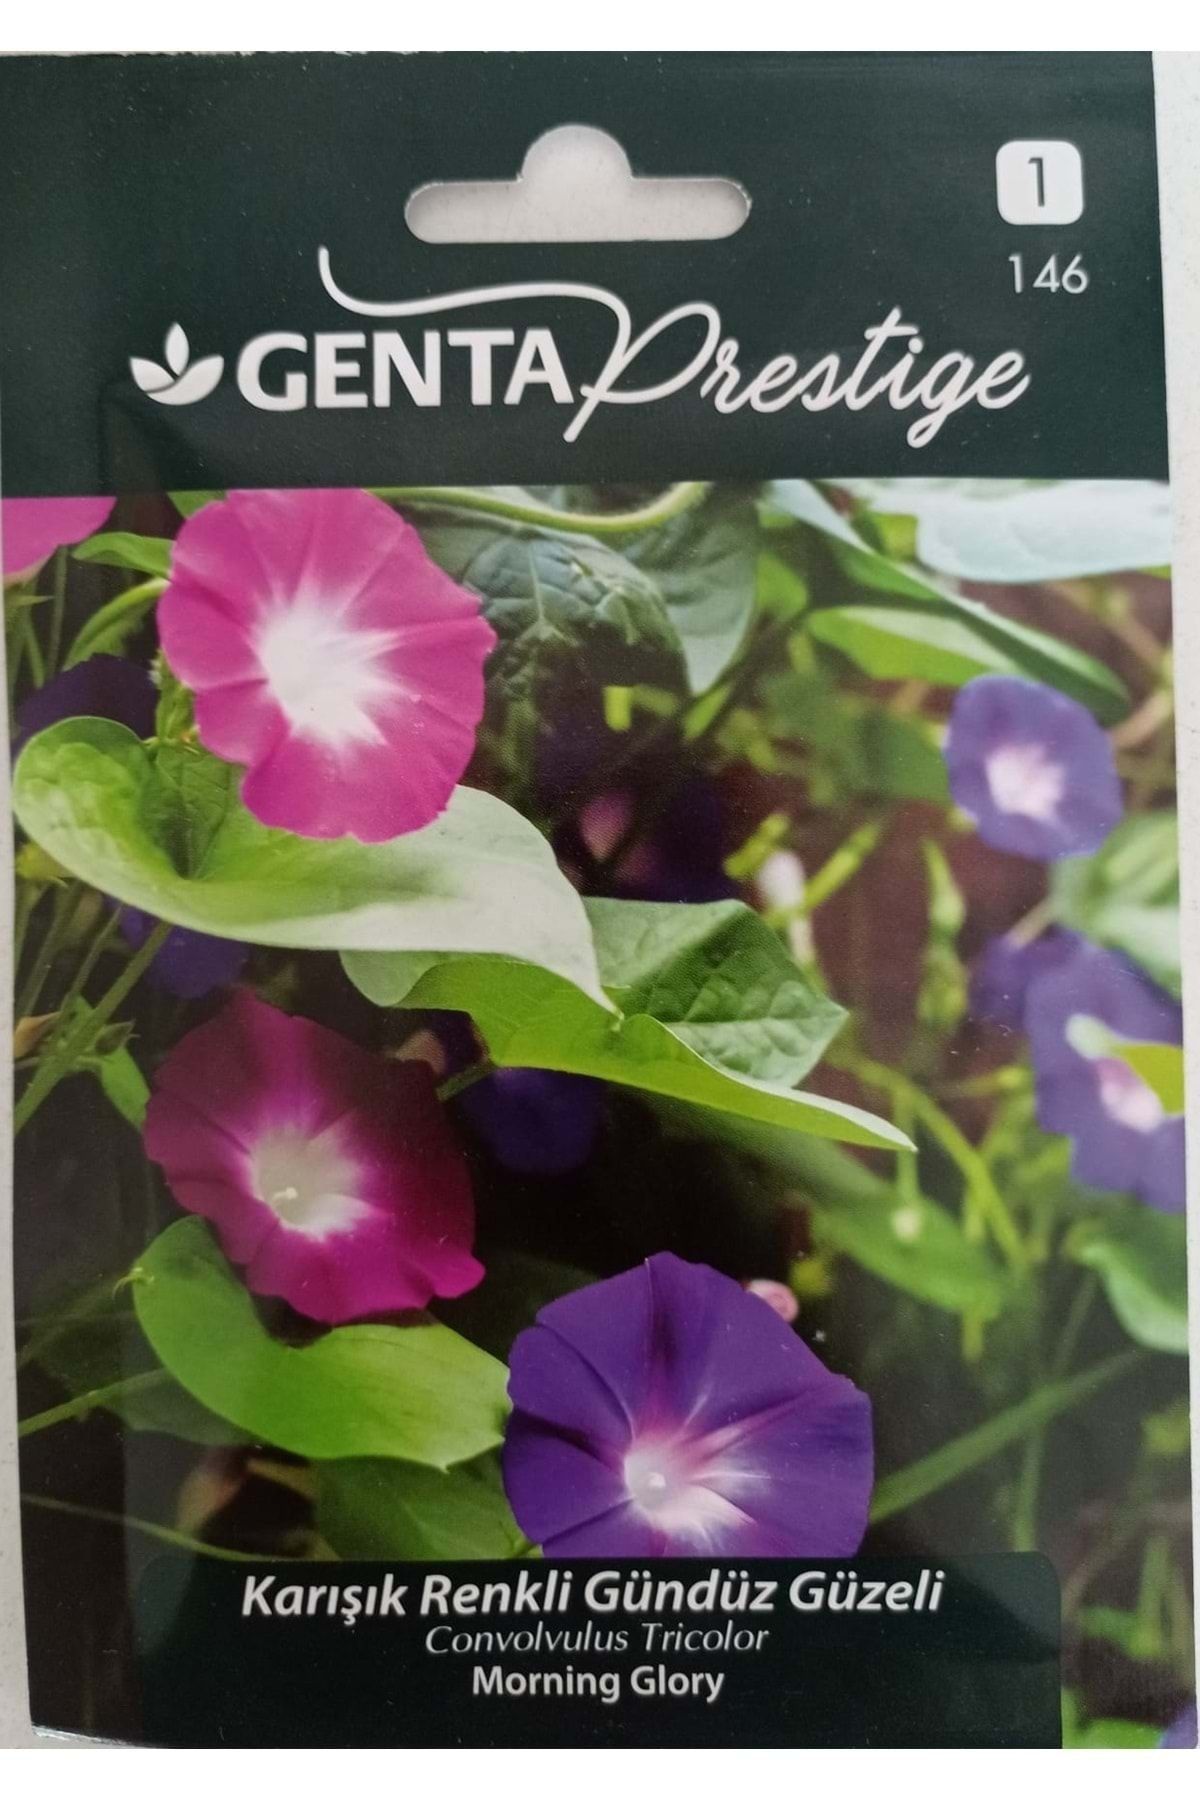 Genta Prestige Karışık Renkli Gündüz Güzeli/convolvulus Tricolor/morning Glory